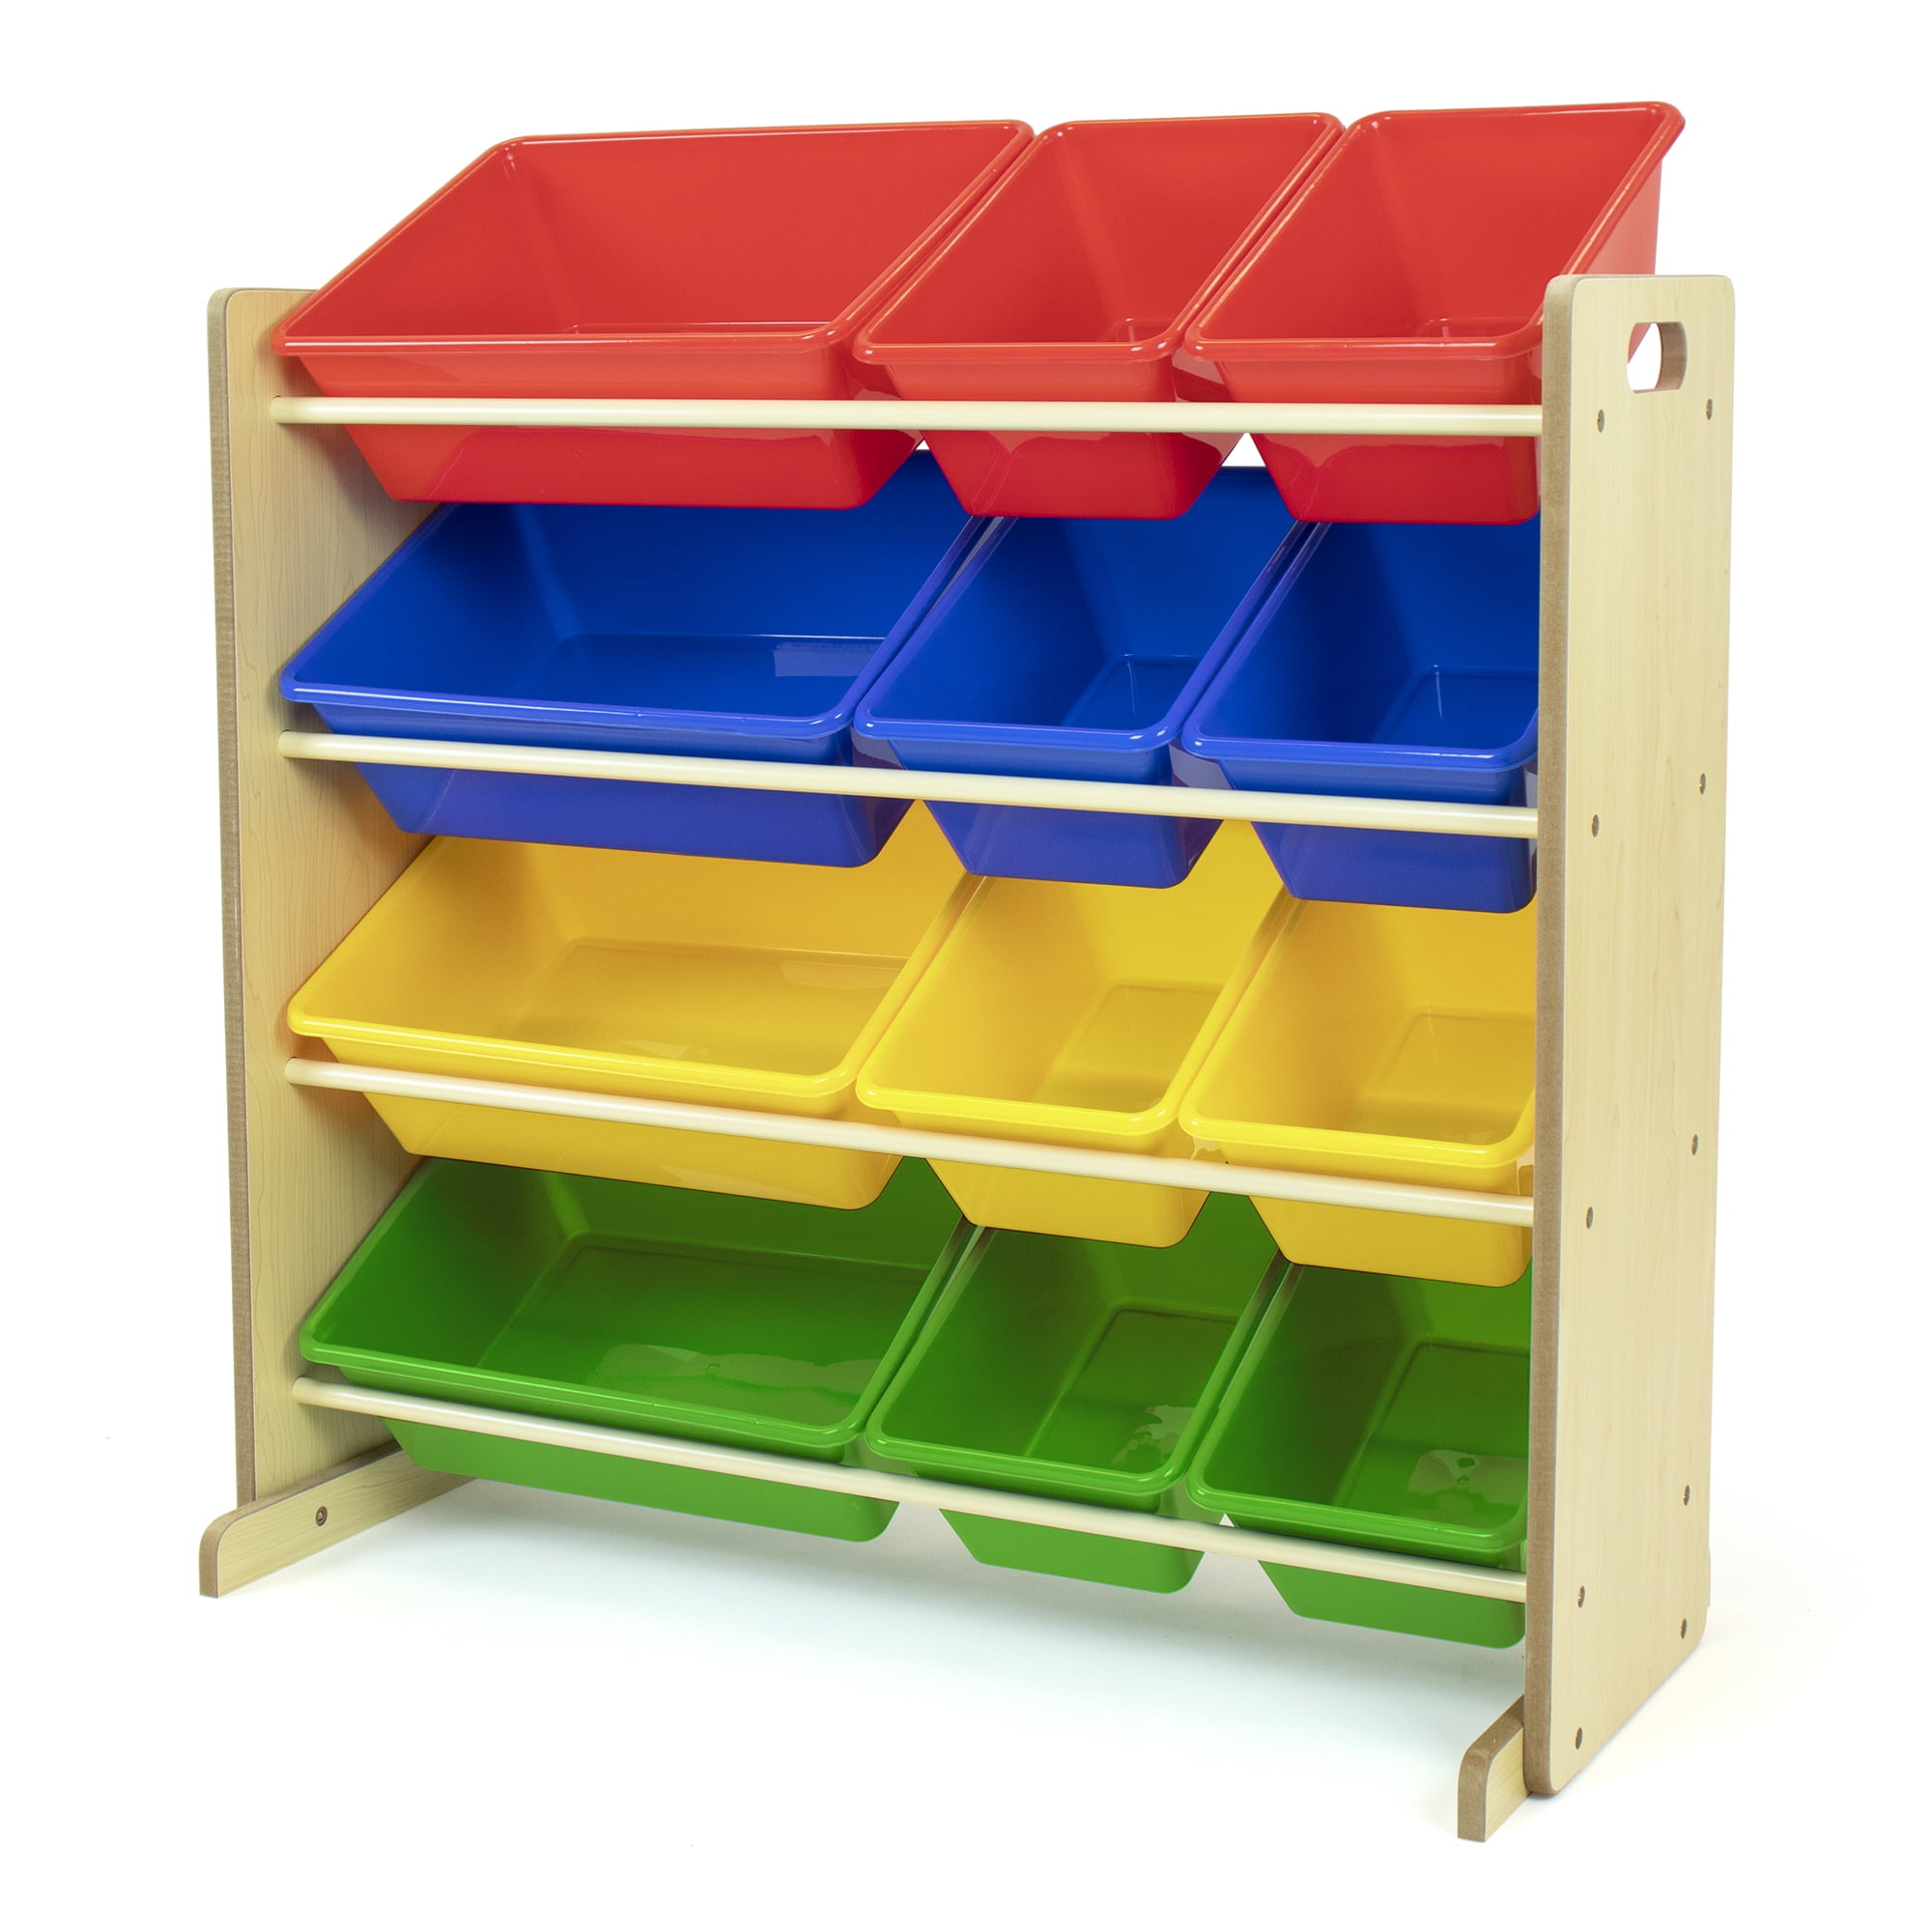 9 Fabric Cases 3-Tier Kids Toy Box Wooden Shelf Storage Rack Organizer Holder 